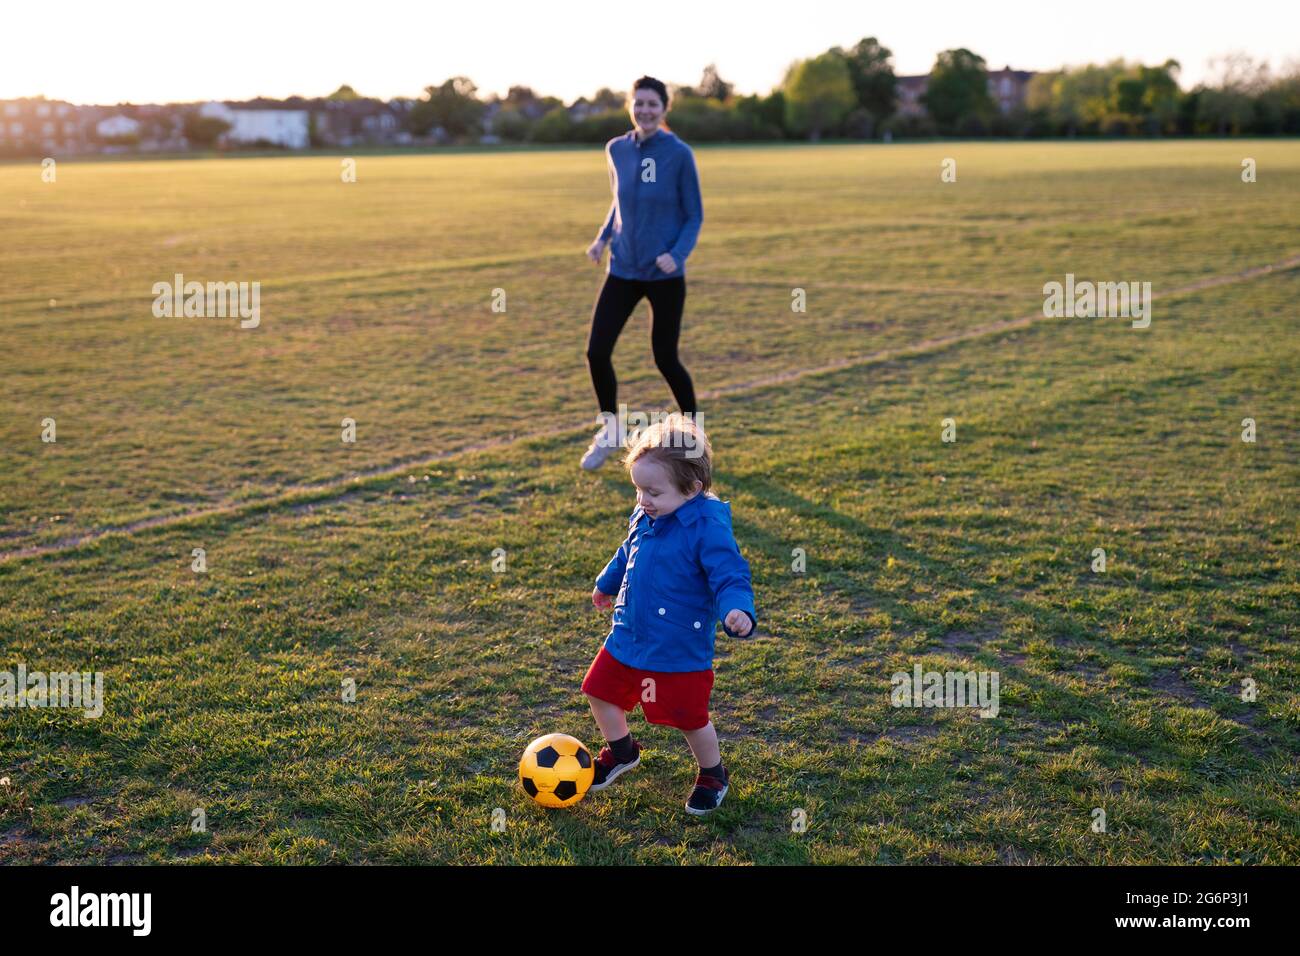 Eine Mutter, die mit ihrem kleinen Sohn Fußball spielt Stockfoto